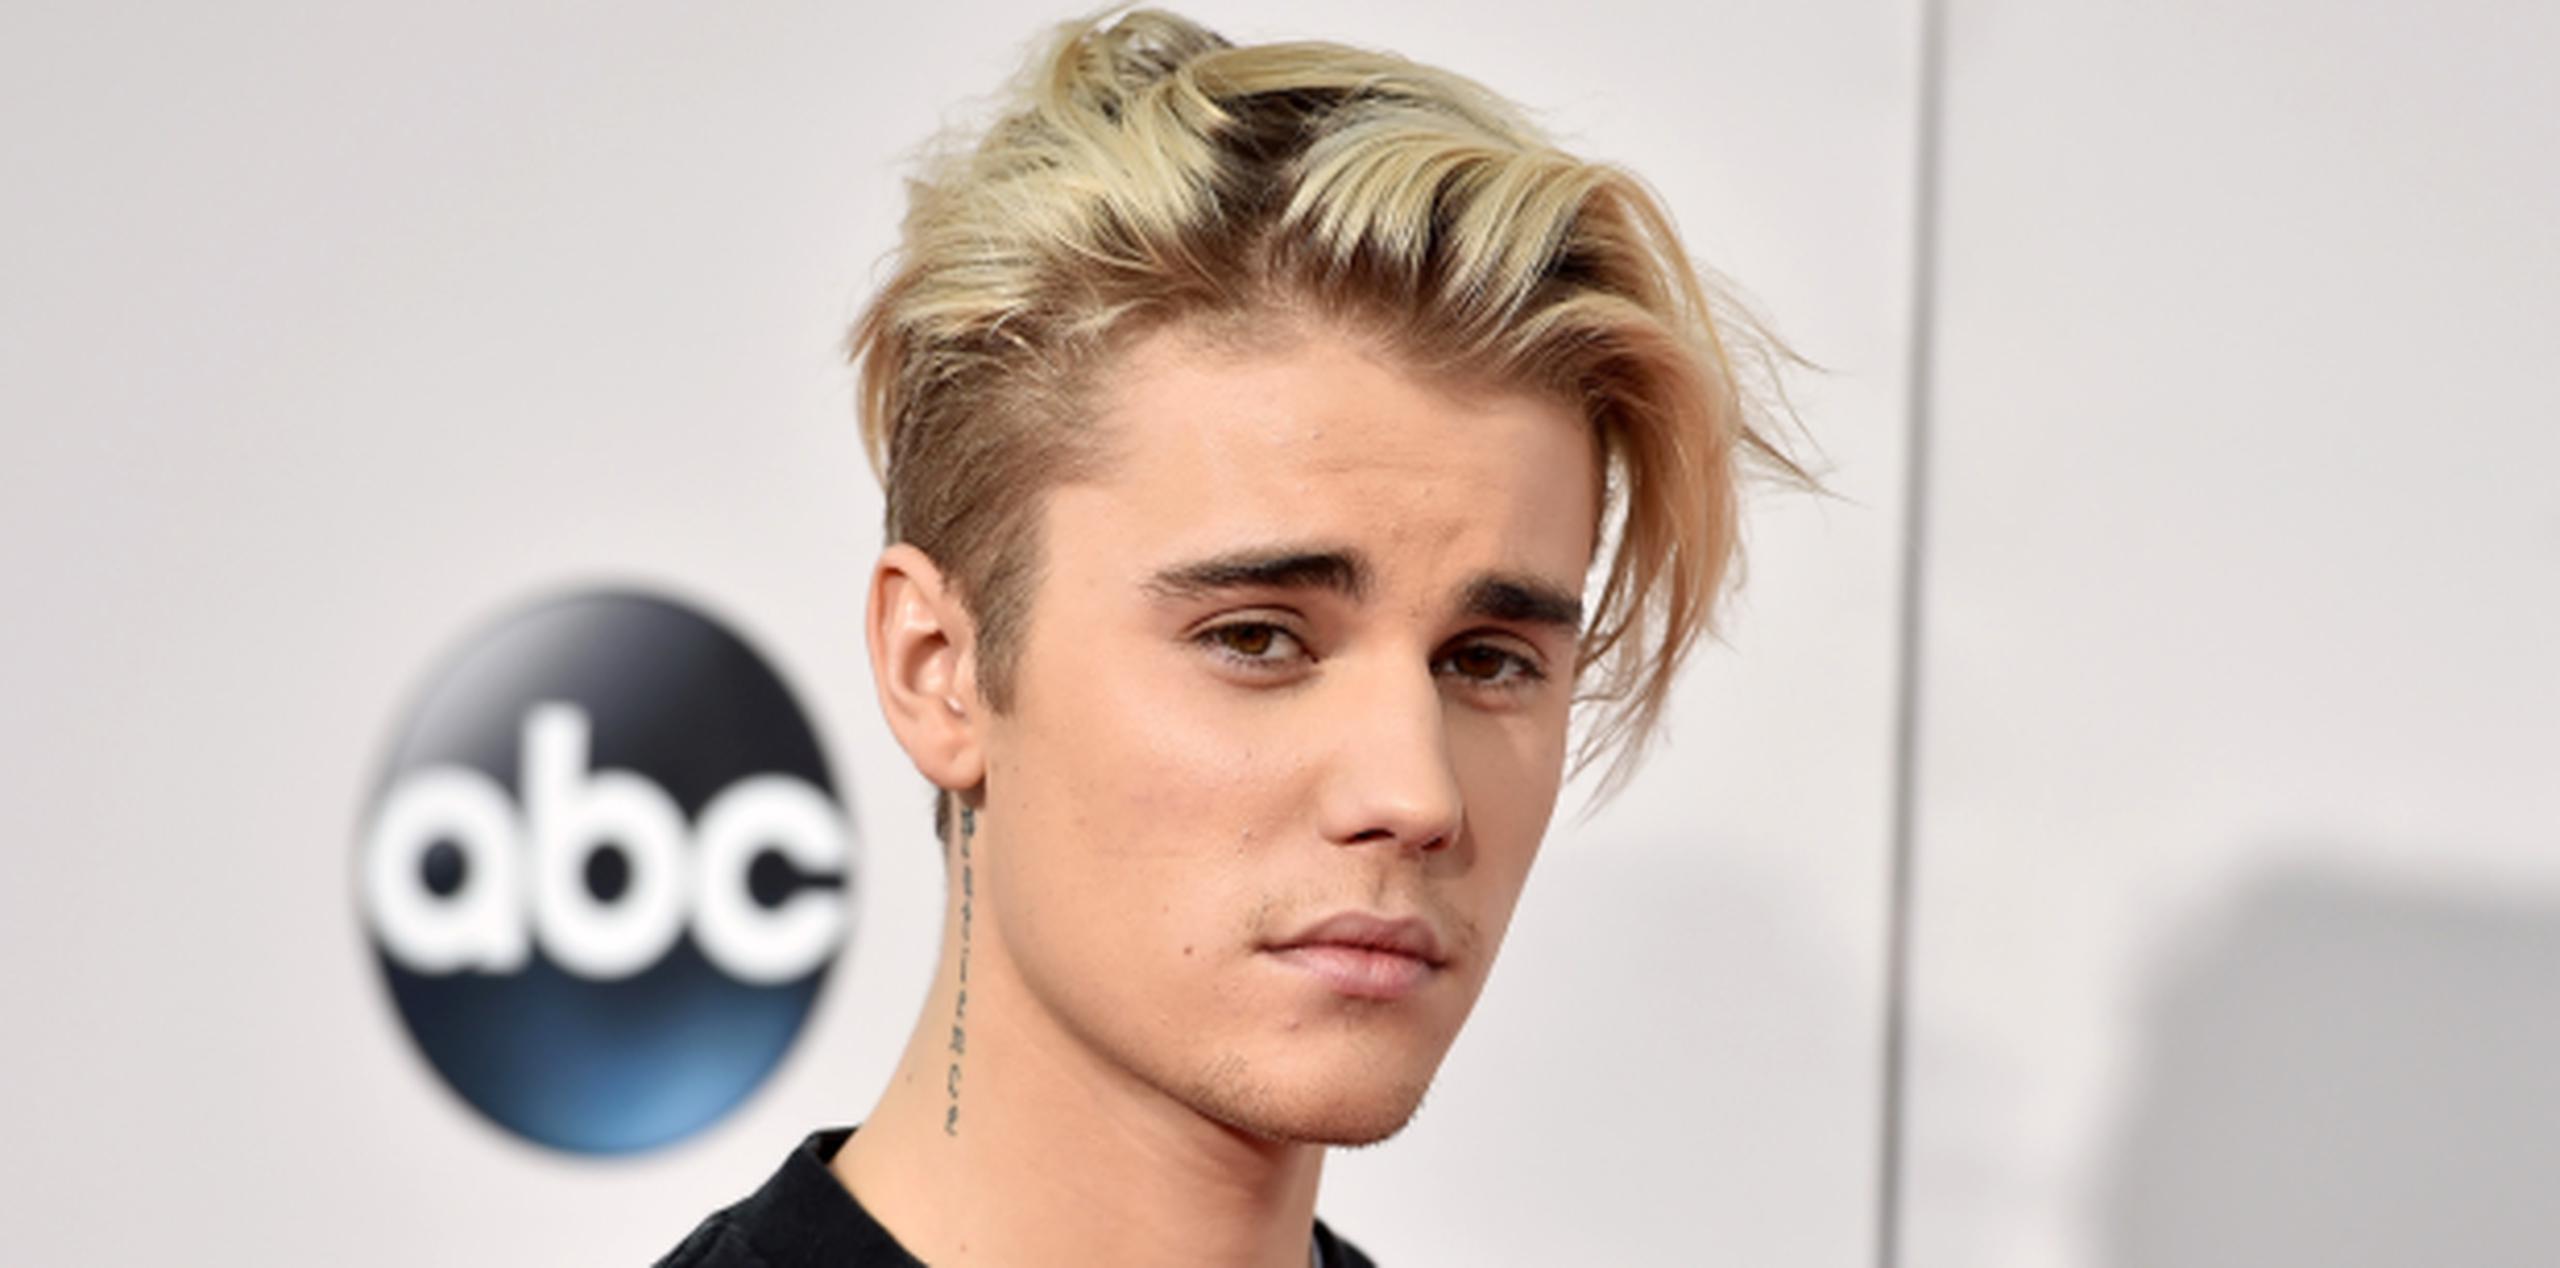 La disputa entre los cantantes comenzó el fin de semana pasado cuando Bieber mostró su disgusto por los comentarios negativos que recibió su actual novia. (Prensa Asociada)